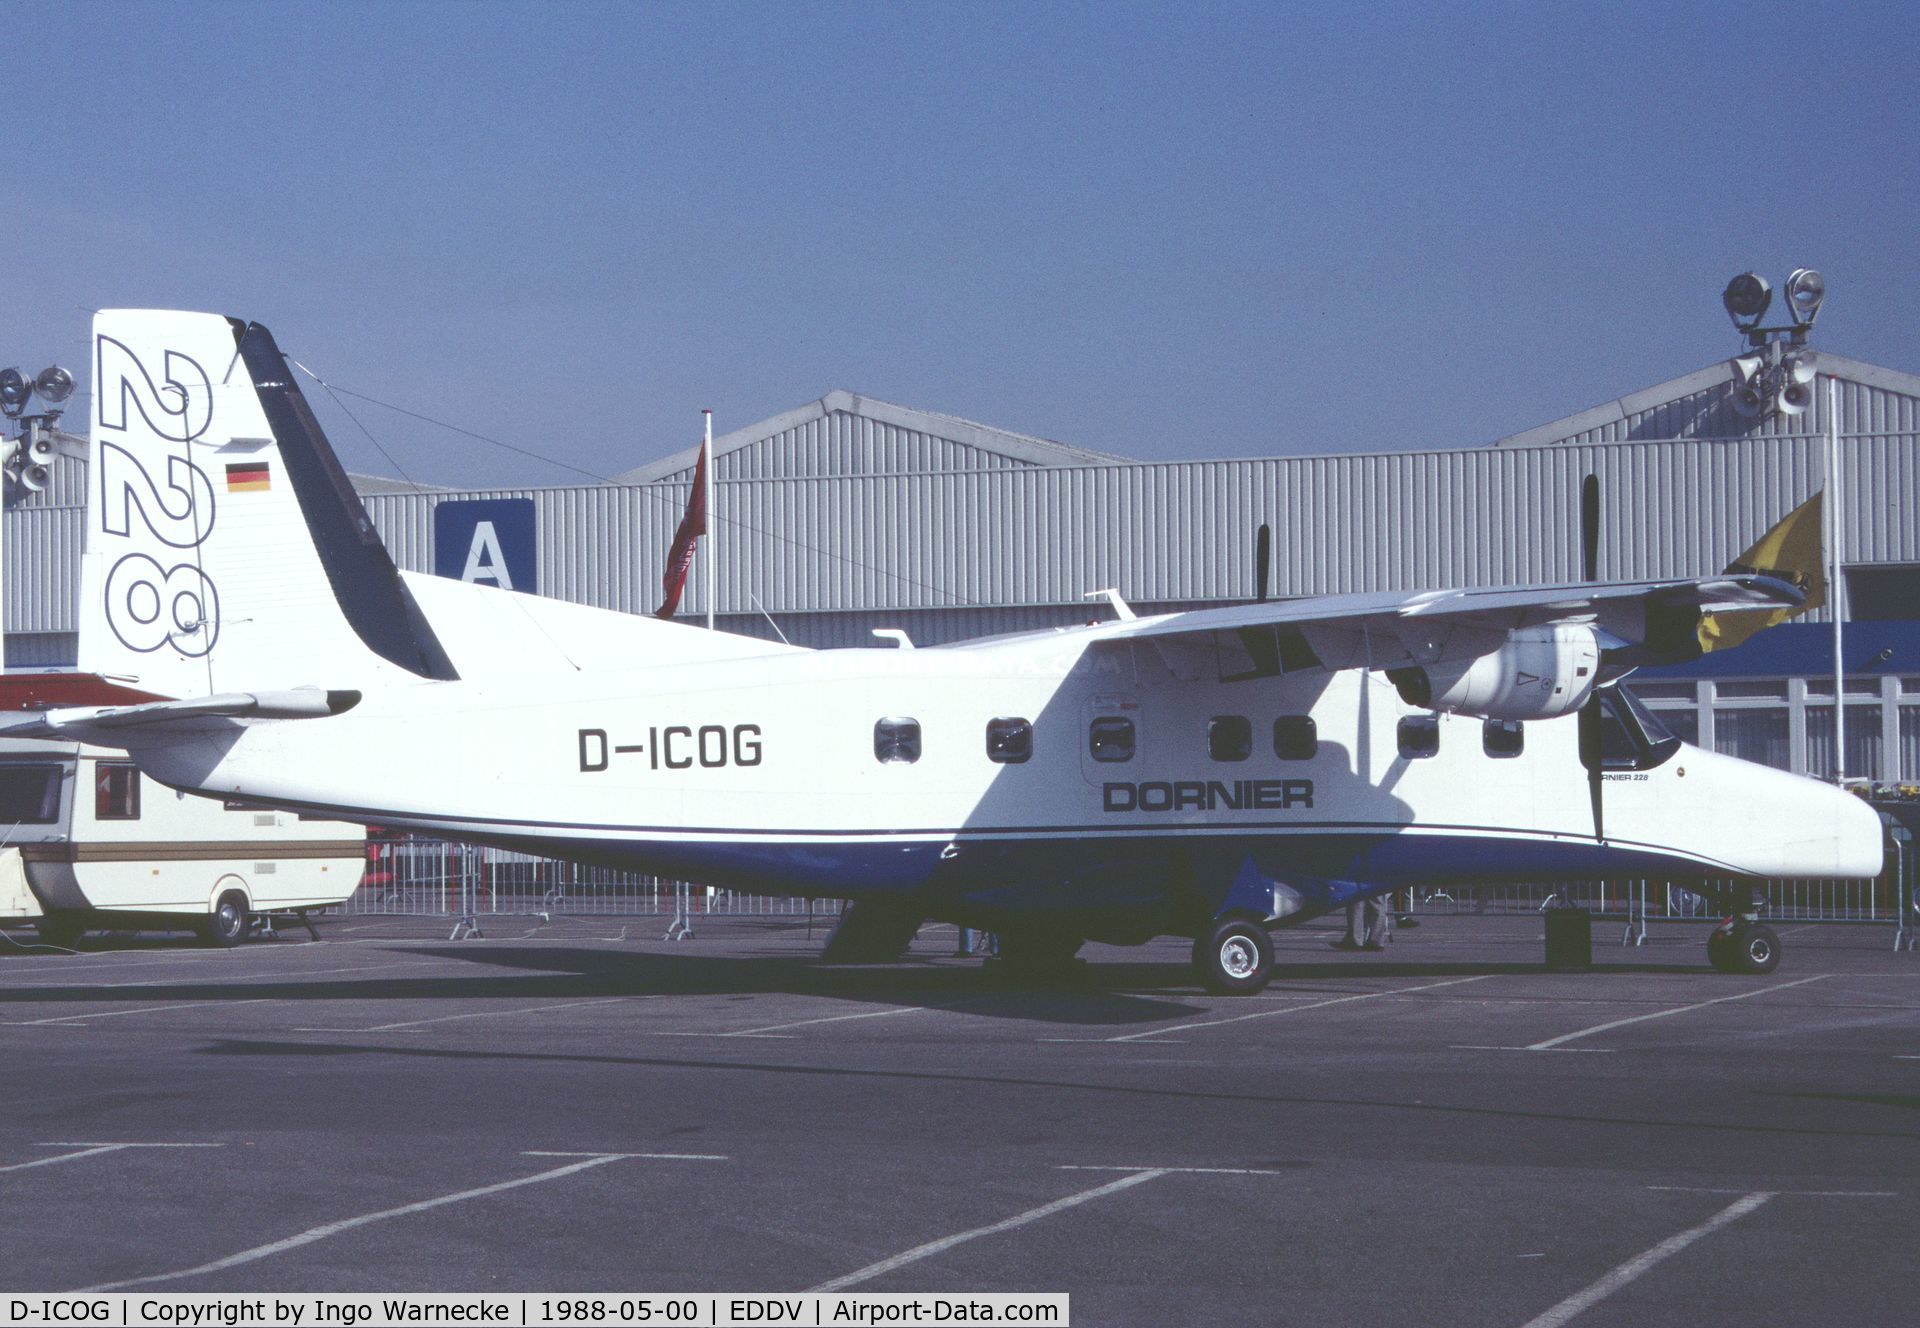 D-ICOG, 1982 Dornier 228-100 C/N 7001, Dornier 228-100 demonstrator at the Internationale Luftfahrtausstellung ILA, Hannover 1988